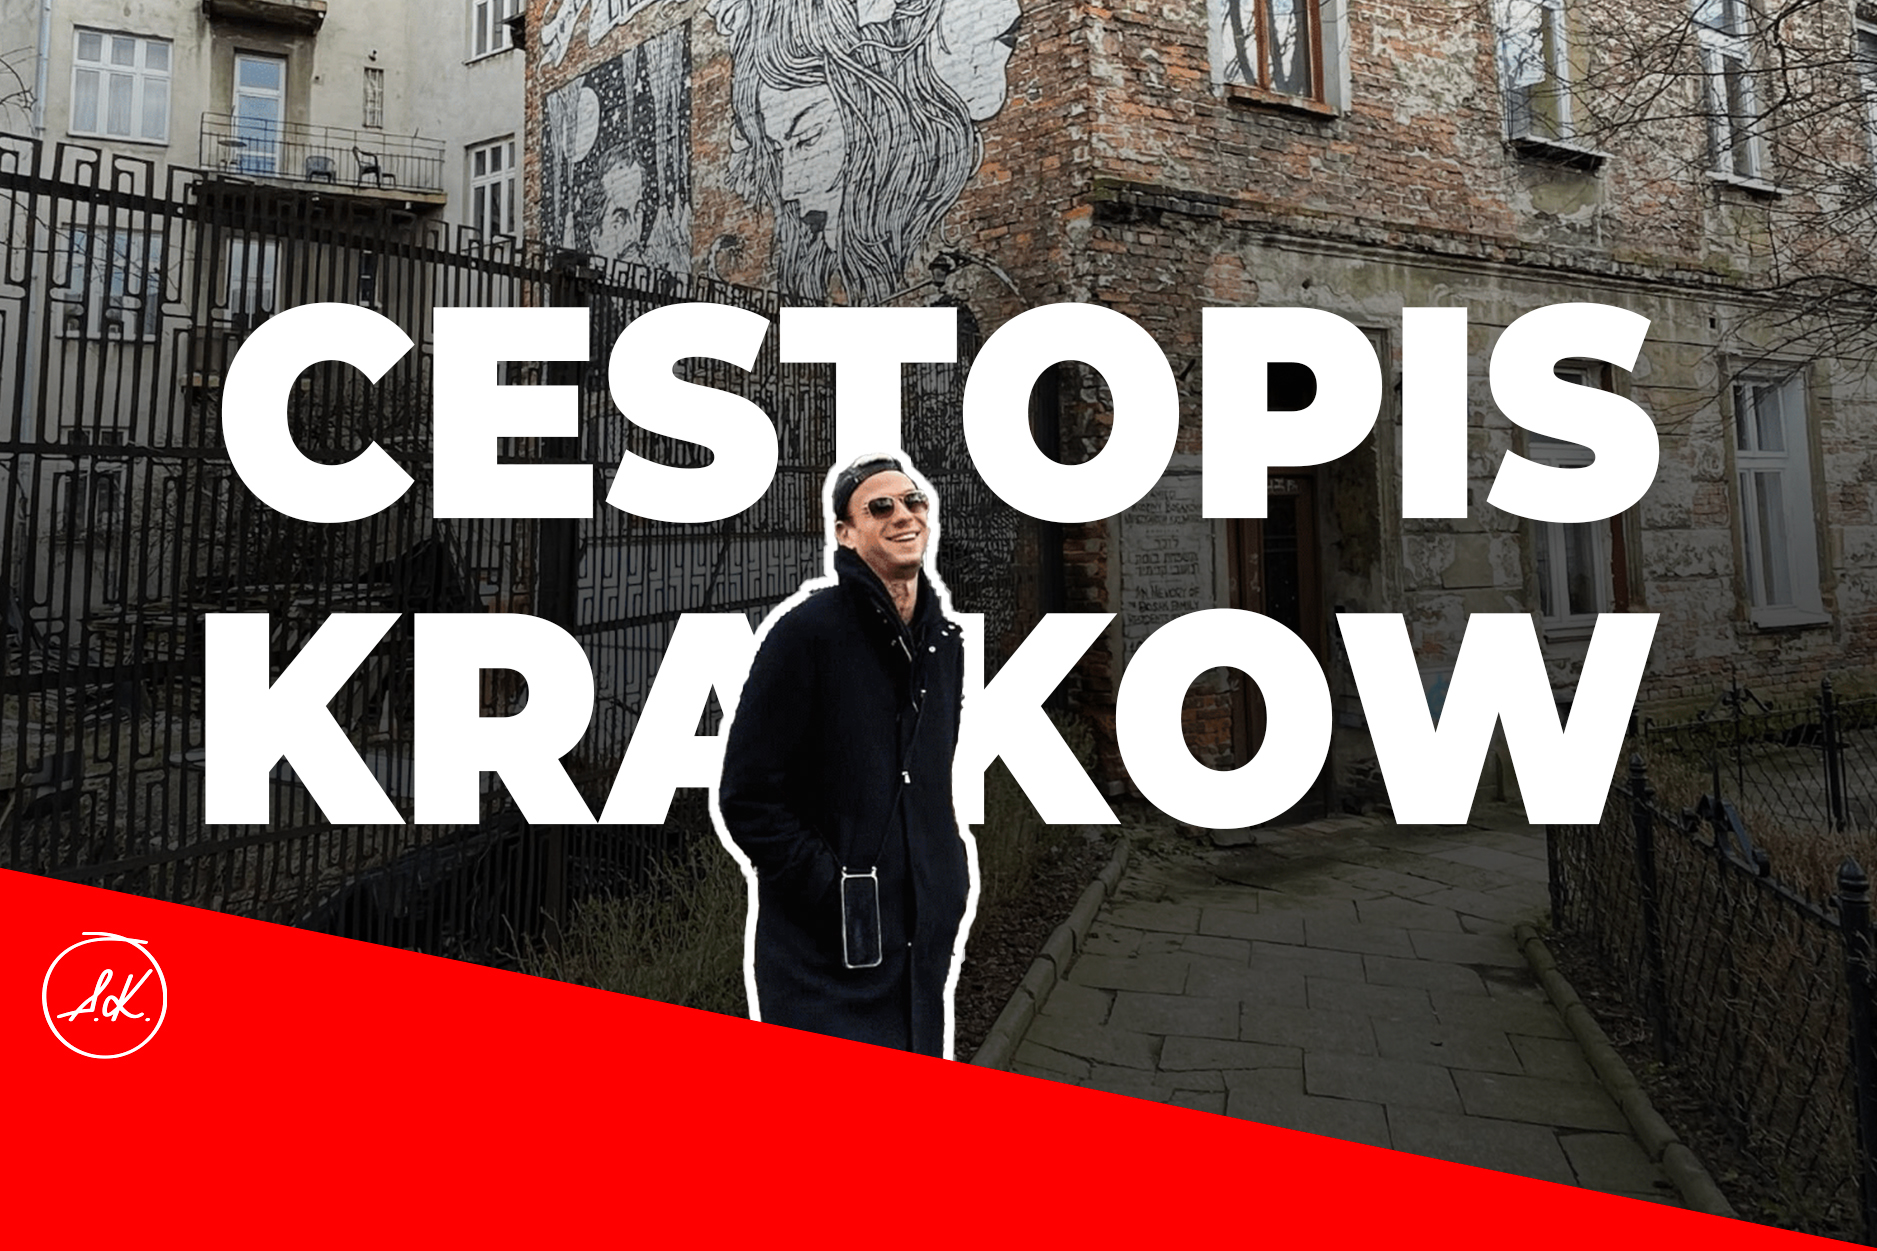 Cestopisy pokračují. Co dělat celý víkend v Krakowě?